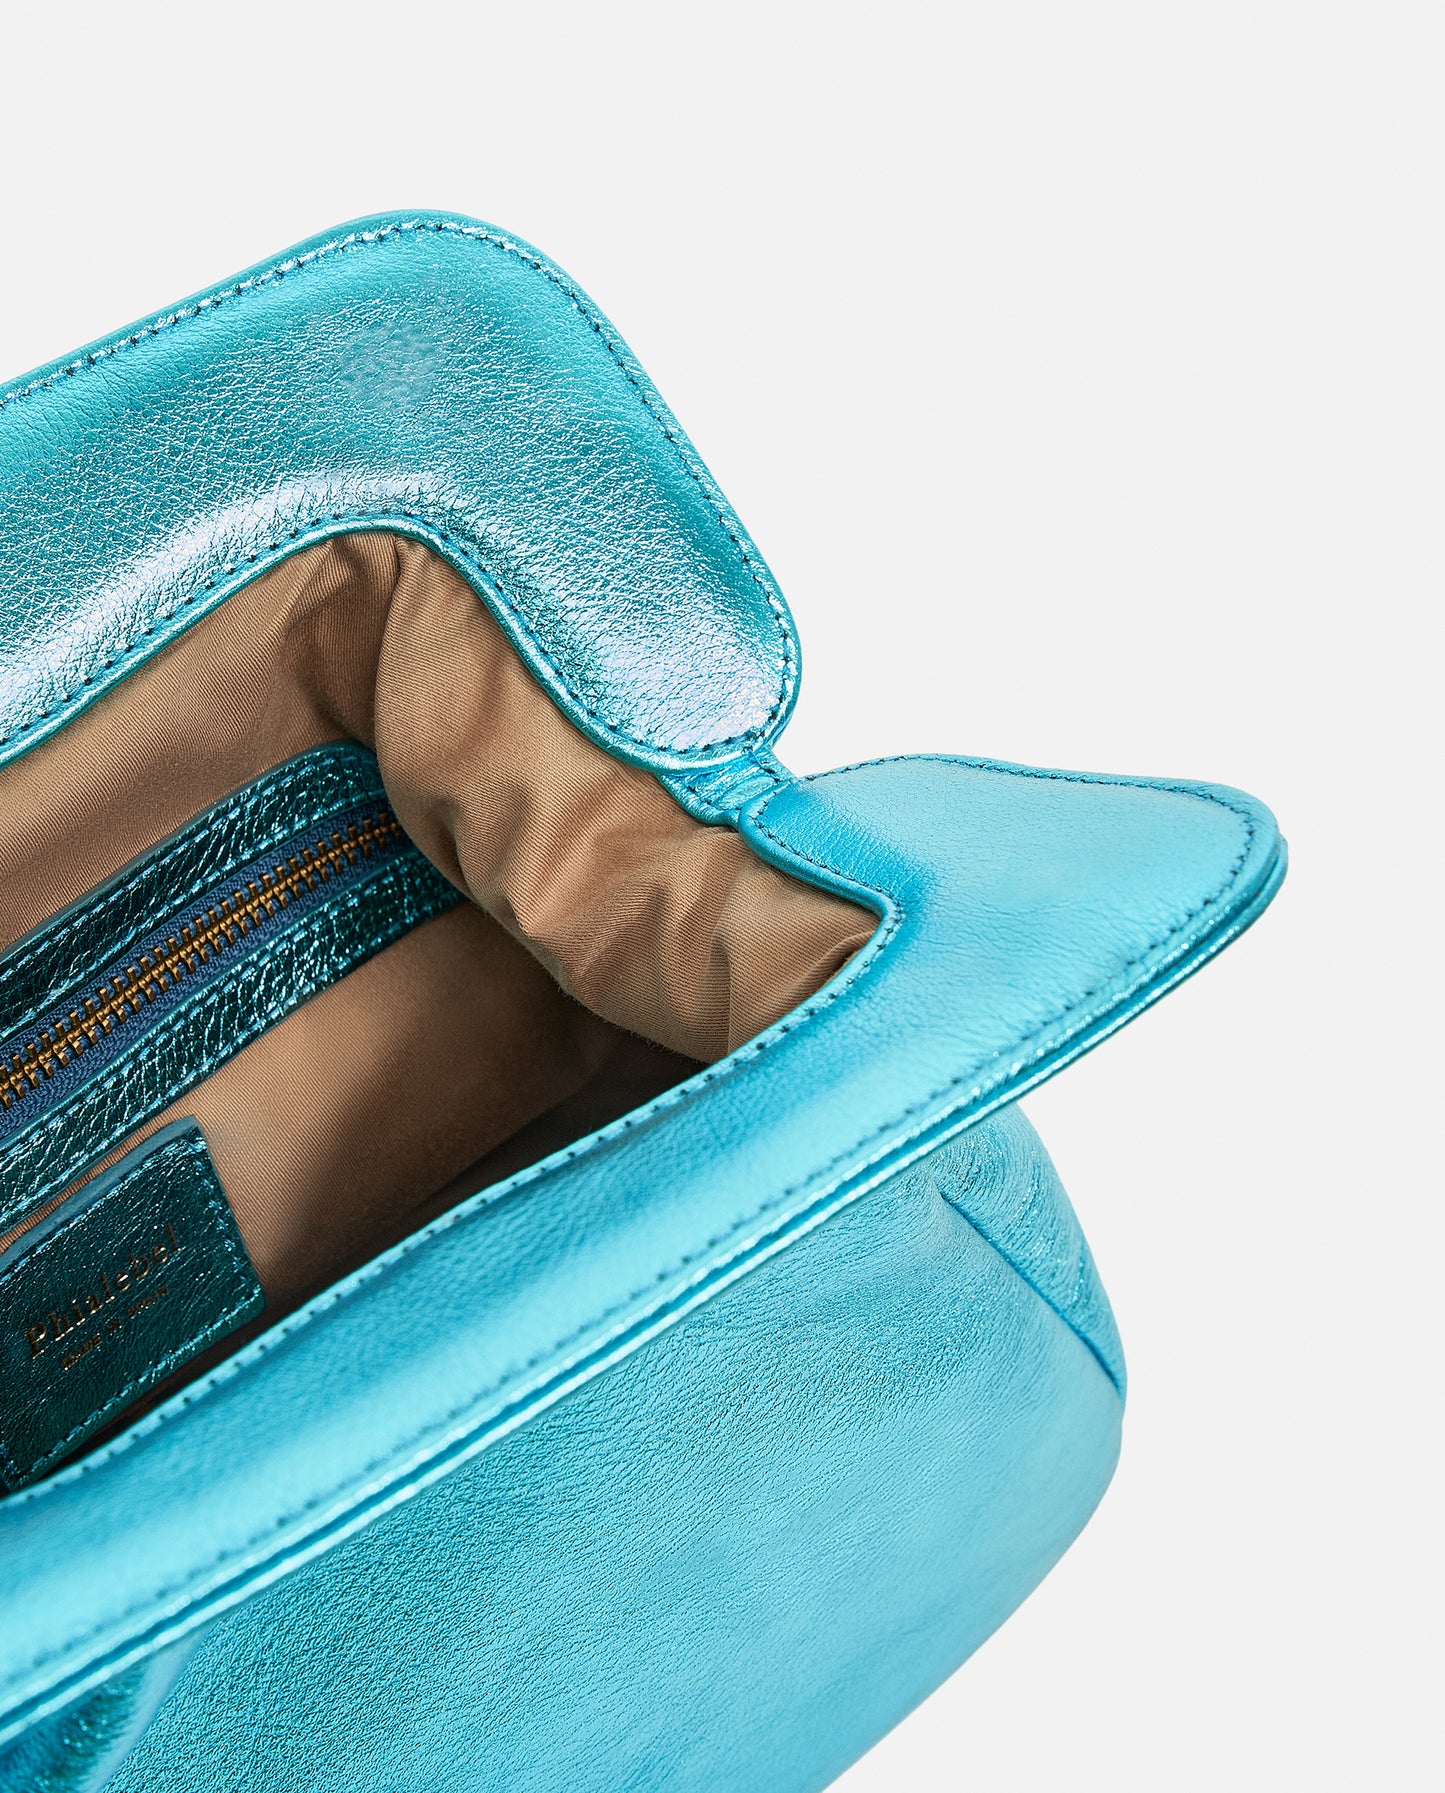 Detalle del interior de bolso azul en acabado metalizado